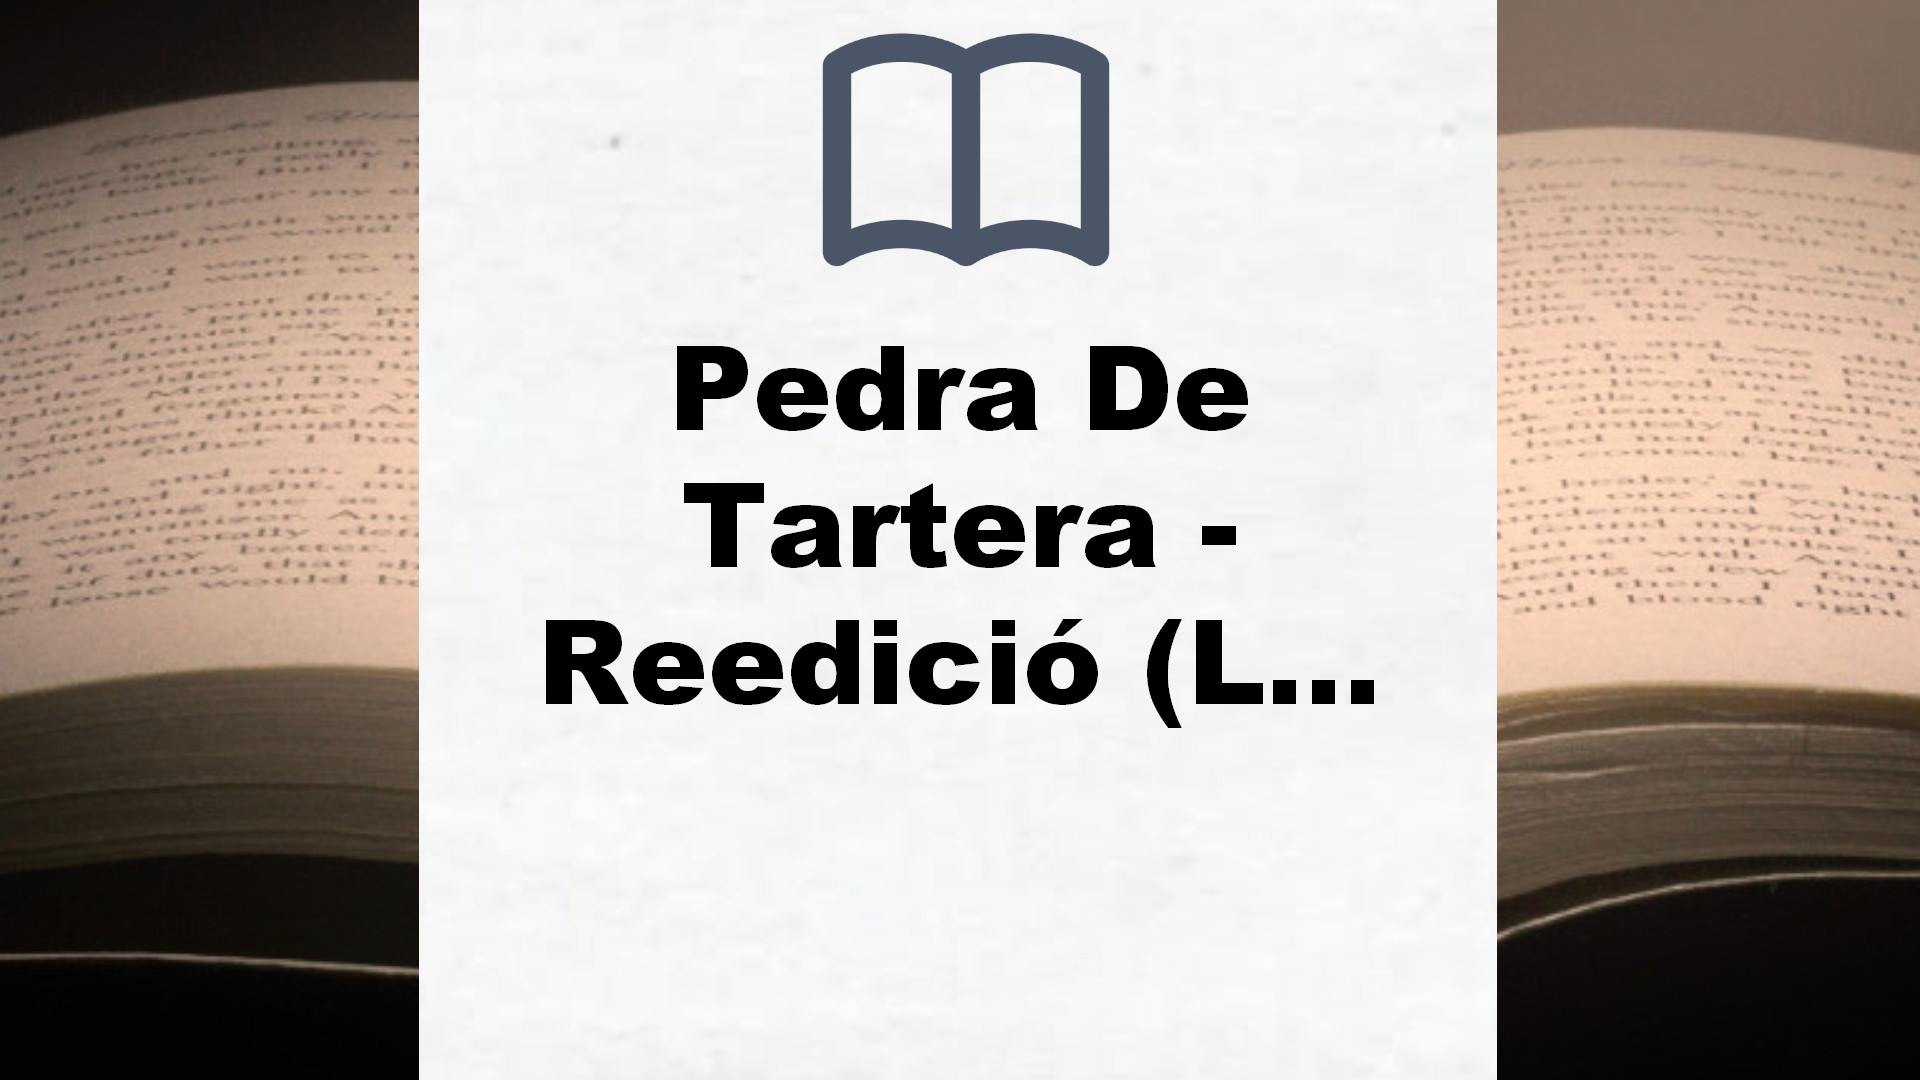 Pedra De Tartera – Reedició (LABUTXACA) – Reseña del libro